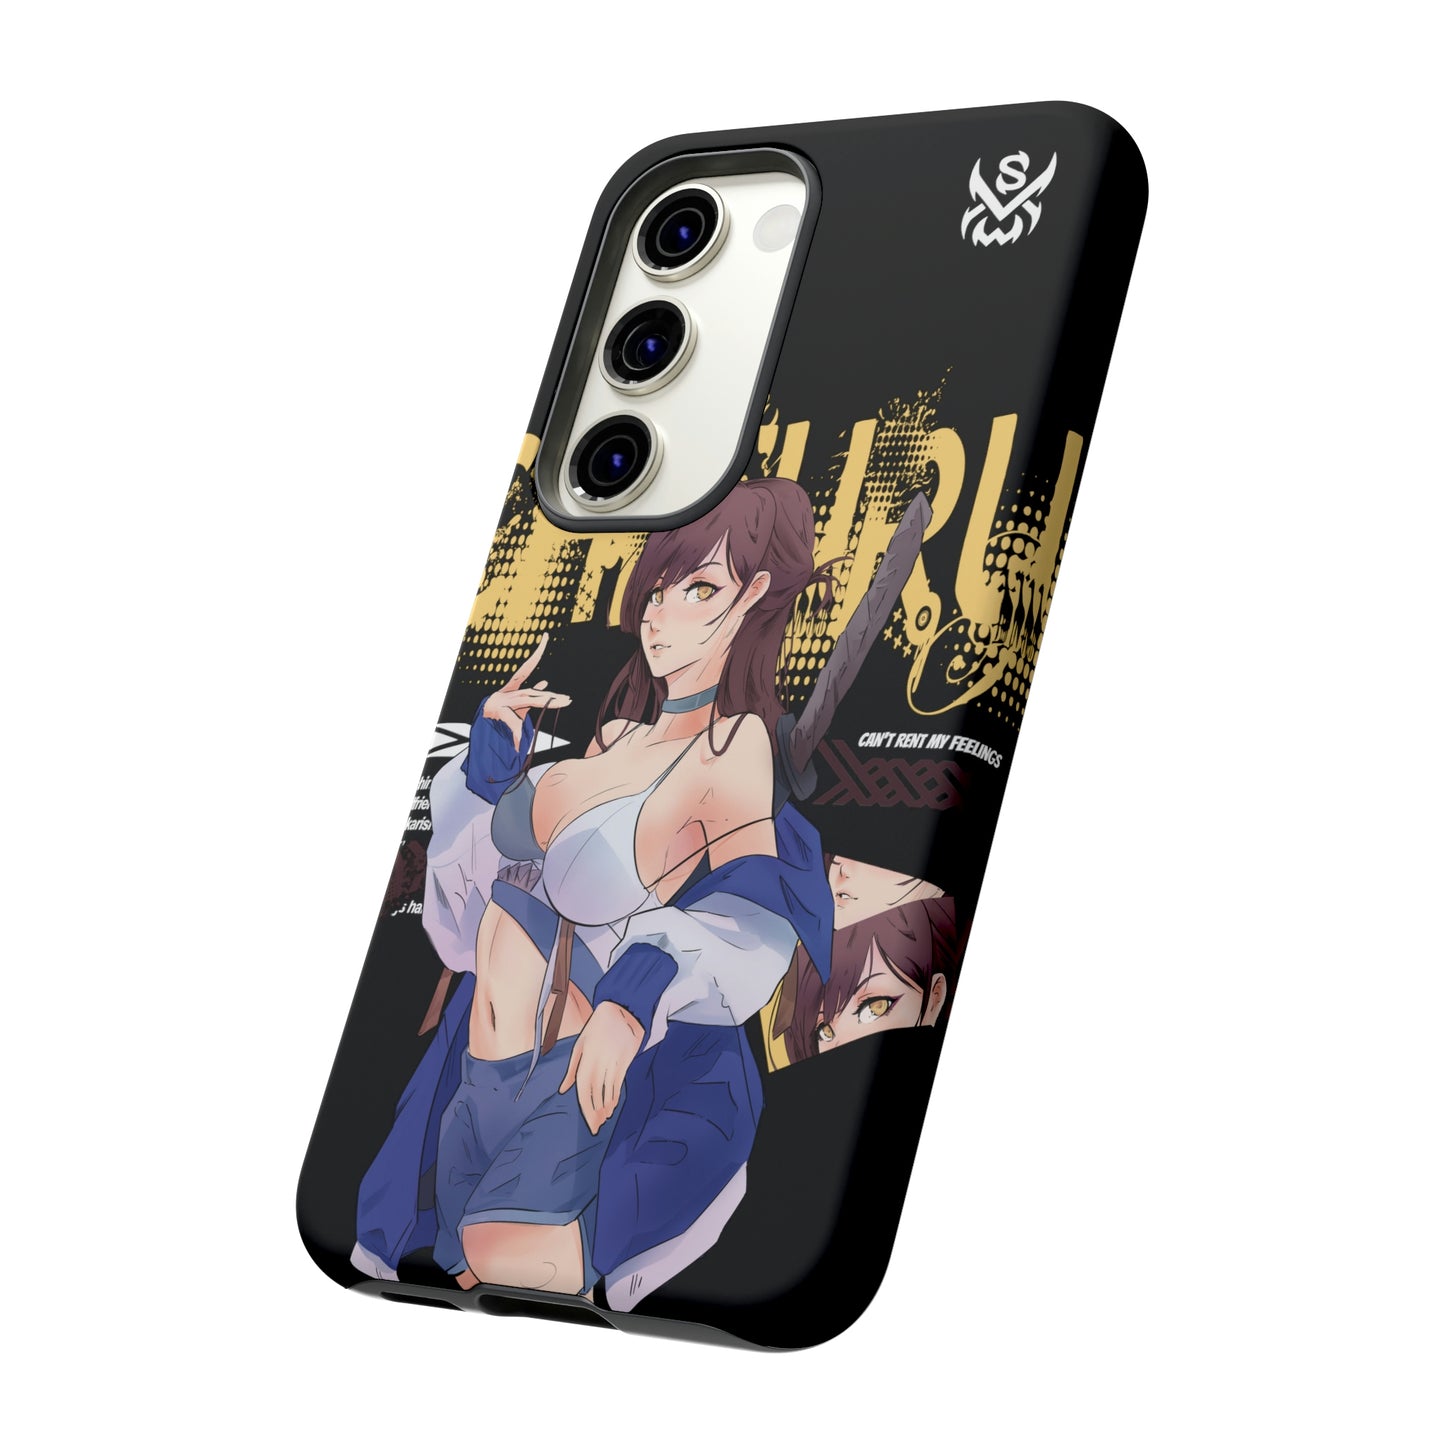 Chizuru / Samsung Galaxy Cases - LIMITED